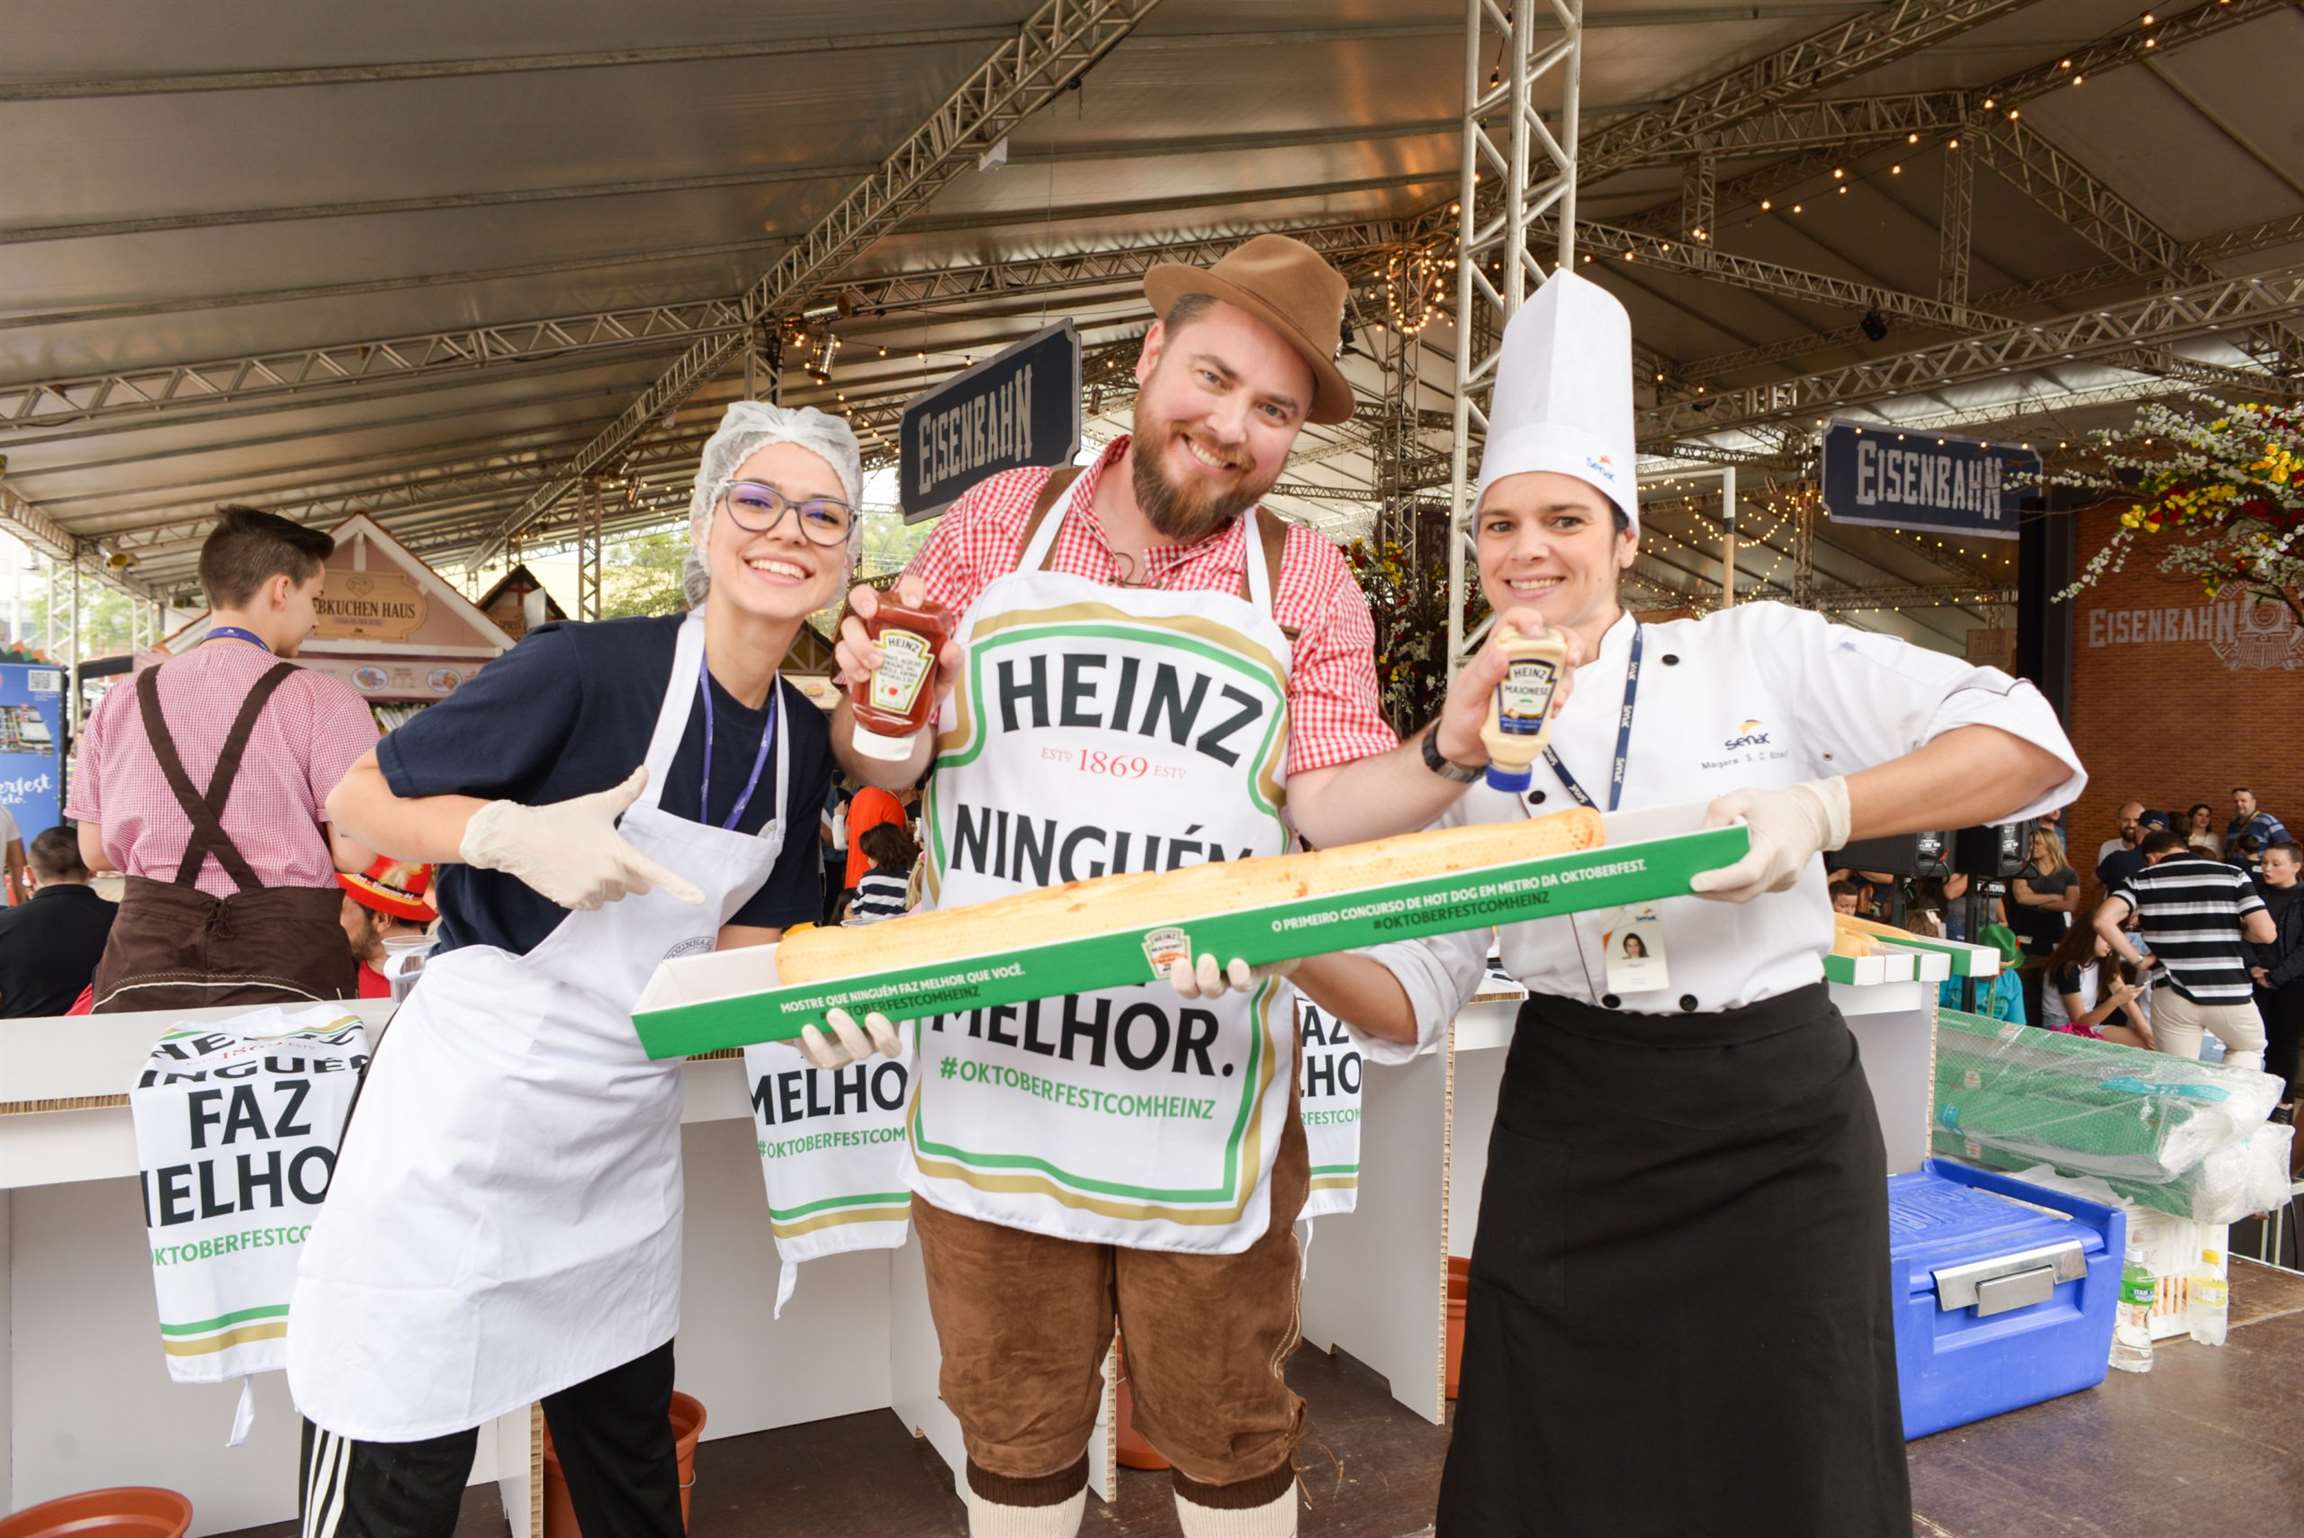 Heinz desafia participantes a comerem um metro de salsicha na Oktoberfest de Blumenau